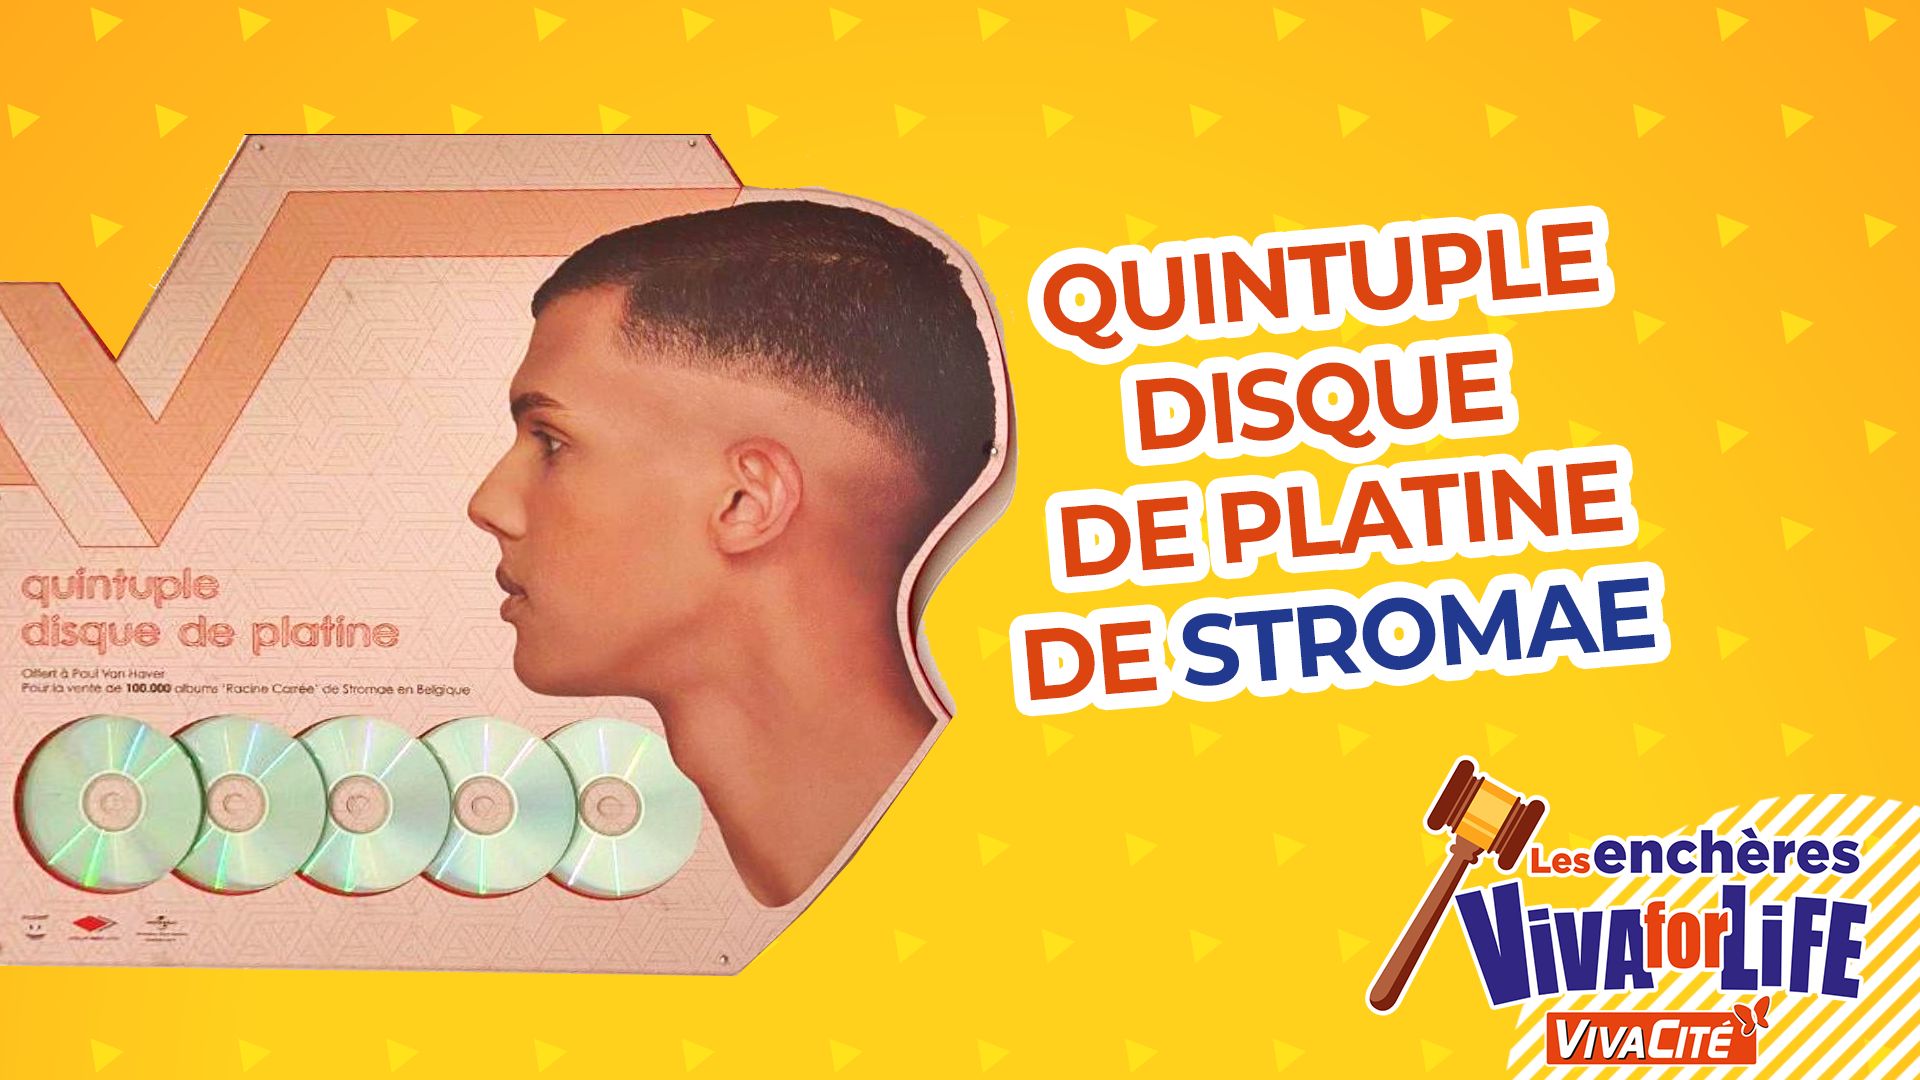 Le quintuple disque de platine "Racine Carrée" de Stromae adjugé à 6000 €